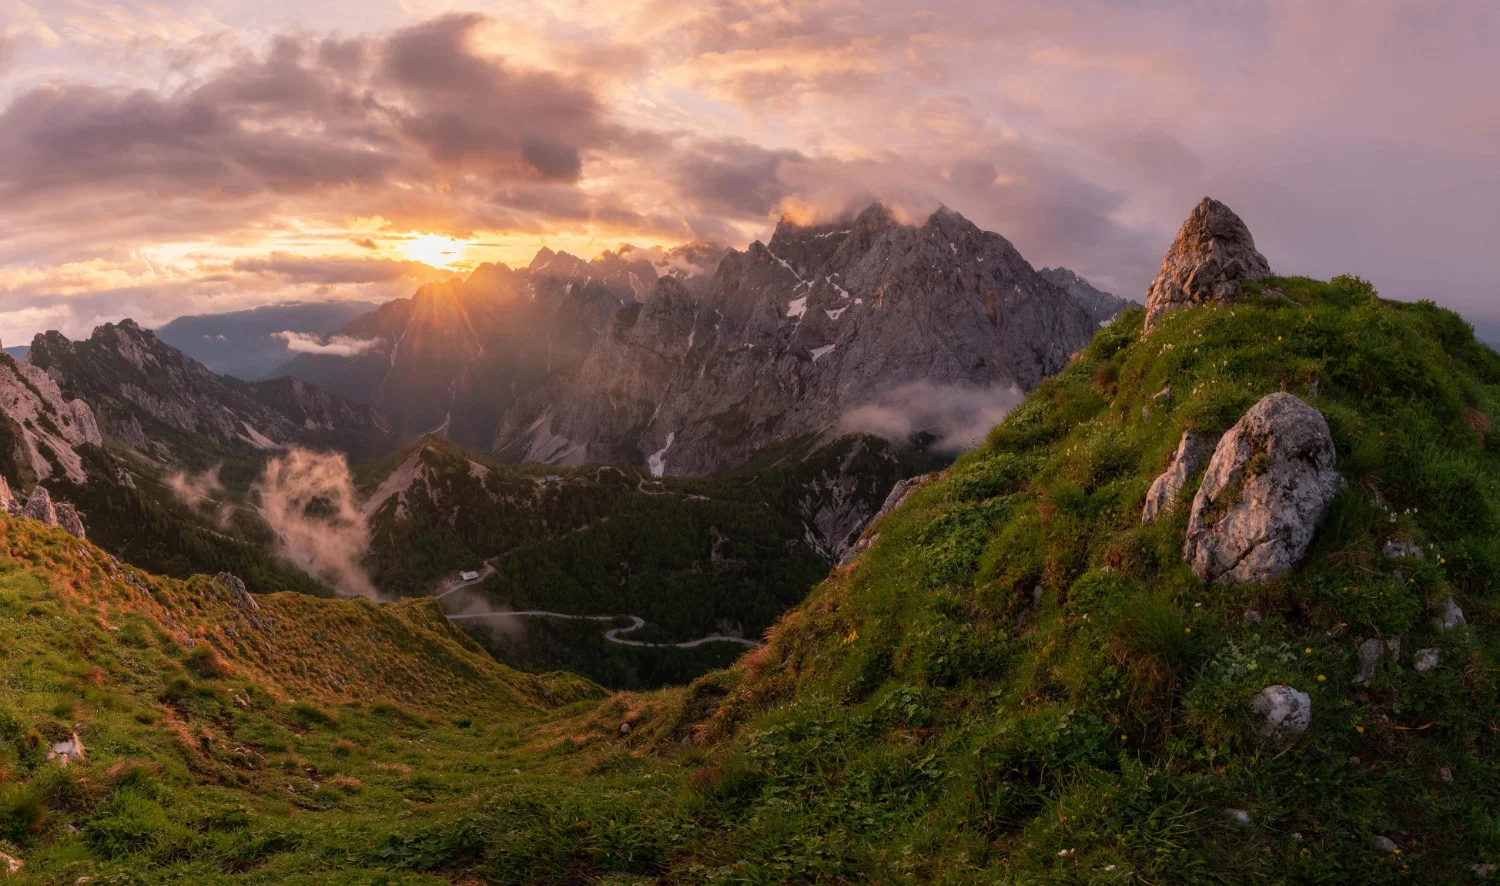 Horská krajina s klikatou silnicí v dálce - Julské Alpy